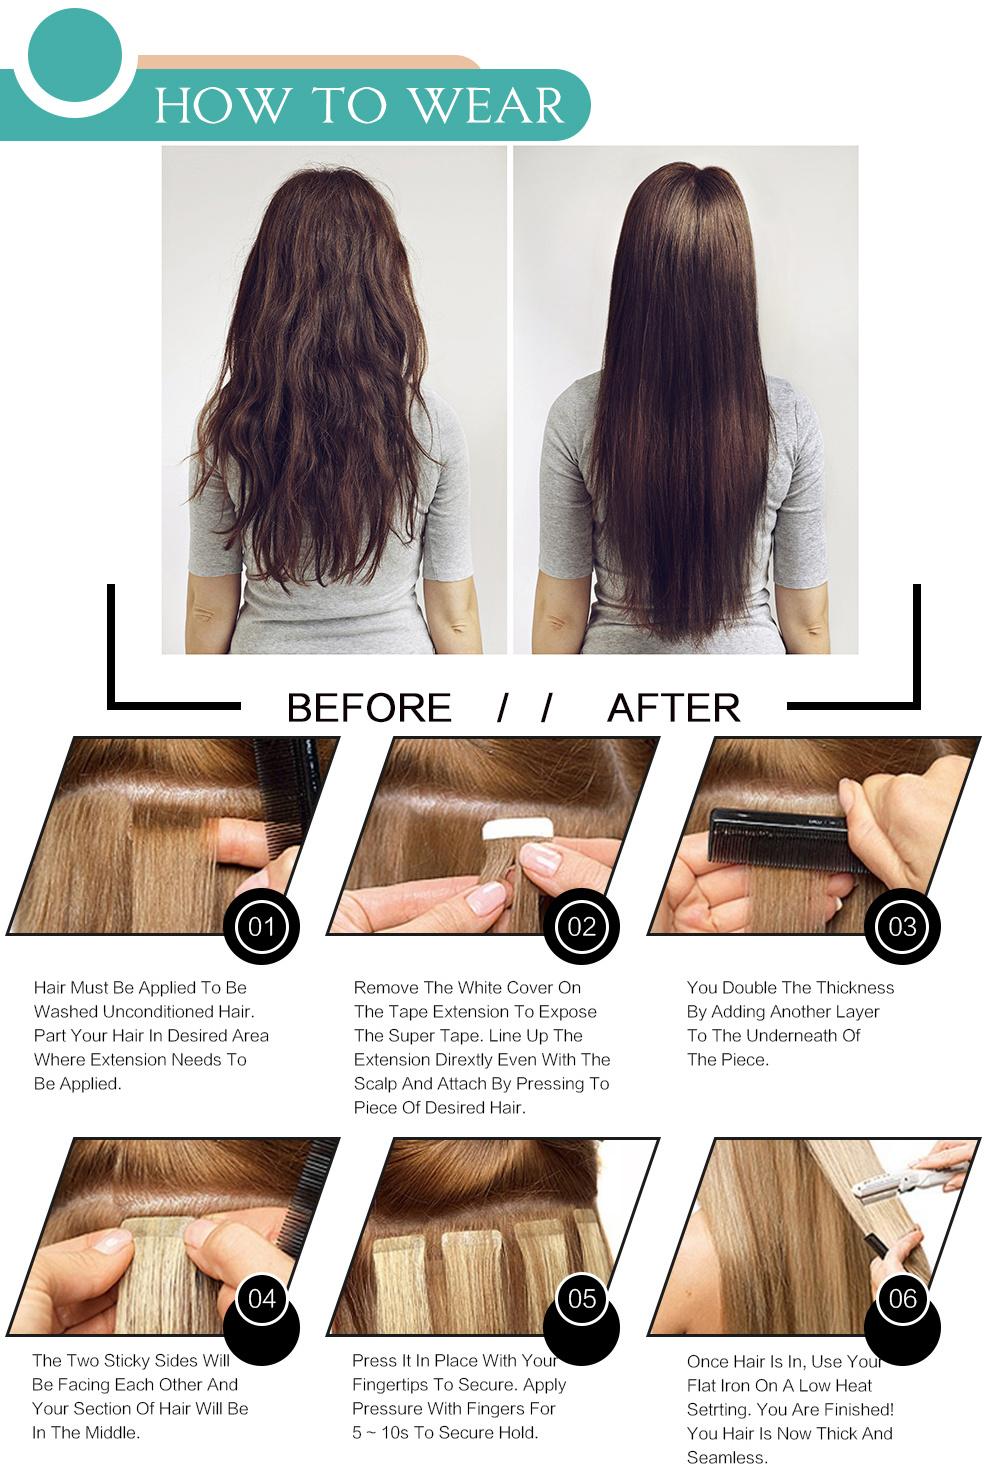 #10 Loop Hair Extension 100% Unprocessed Virgin Remy Human Hair